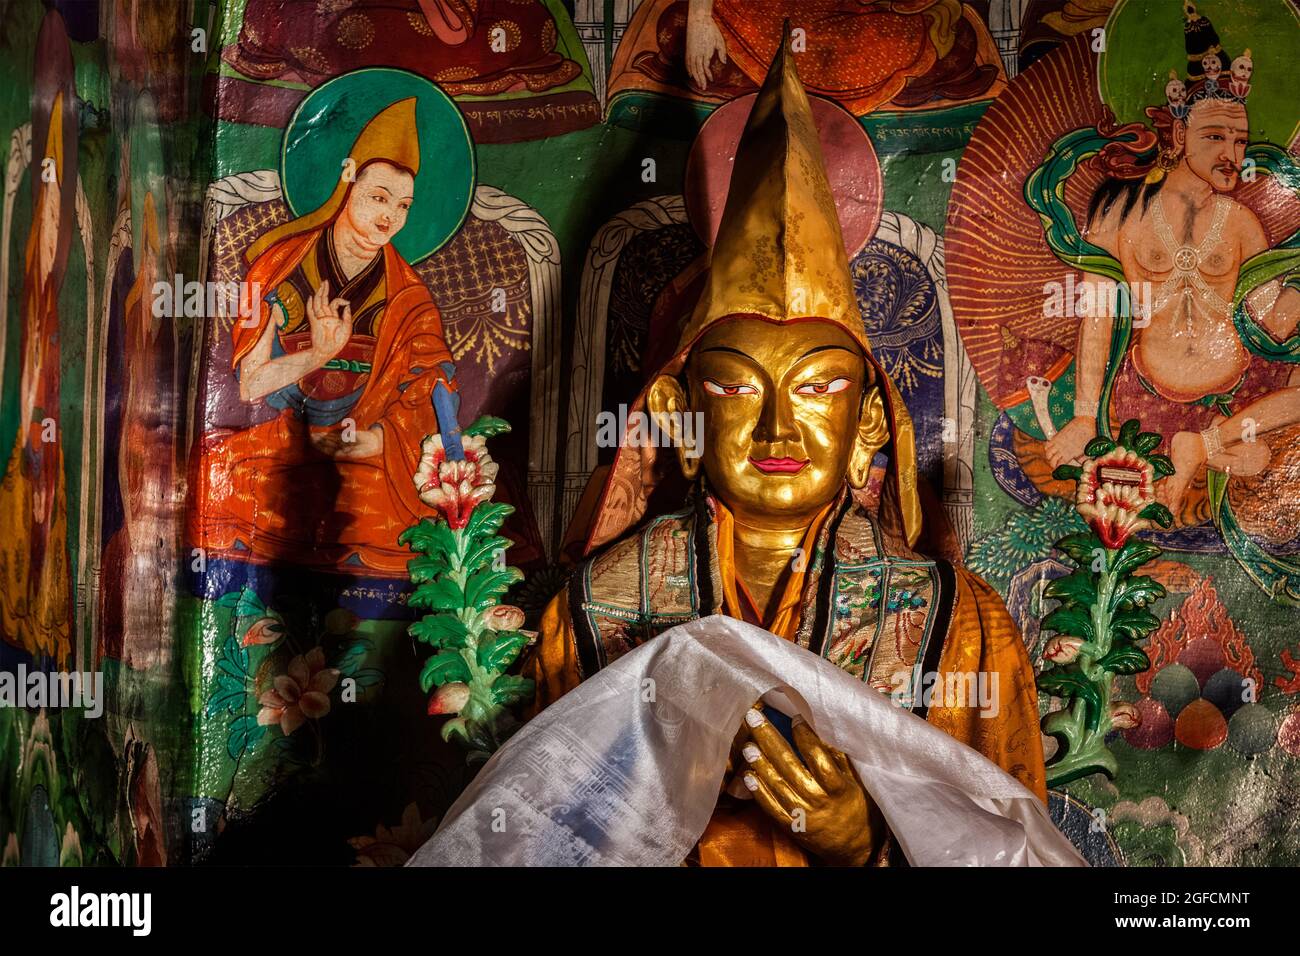 Statue de Je Tsongkhapa, fondateur de l'école Gelugpa du Likir Gompa. Ladakh, Inde Banque D'Images